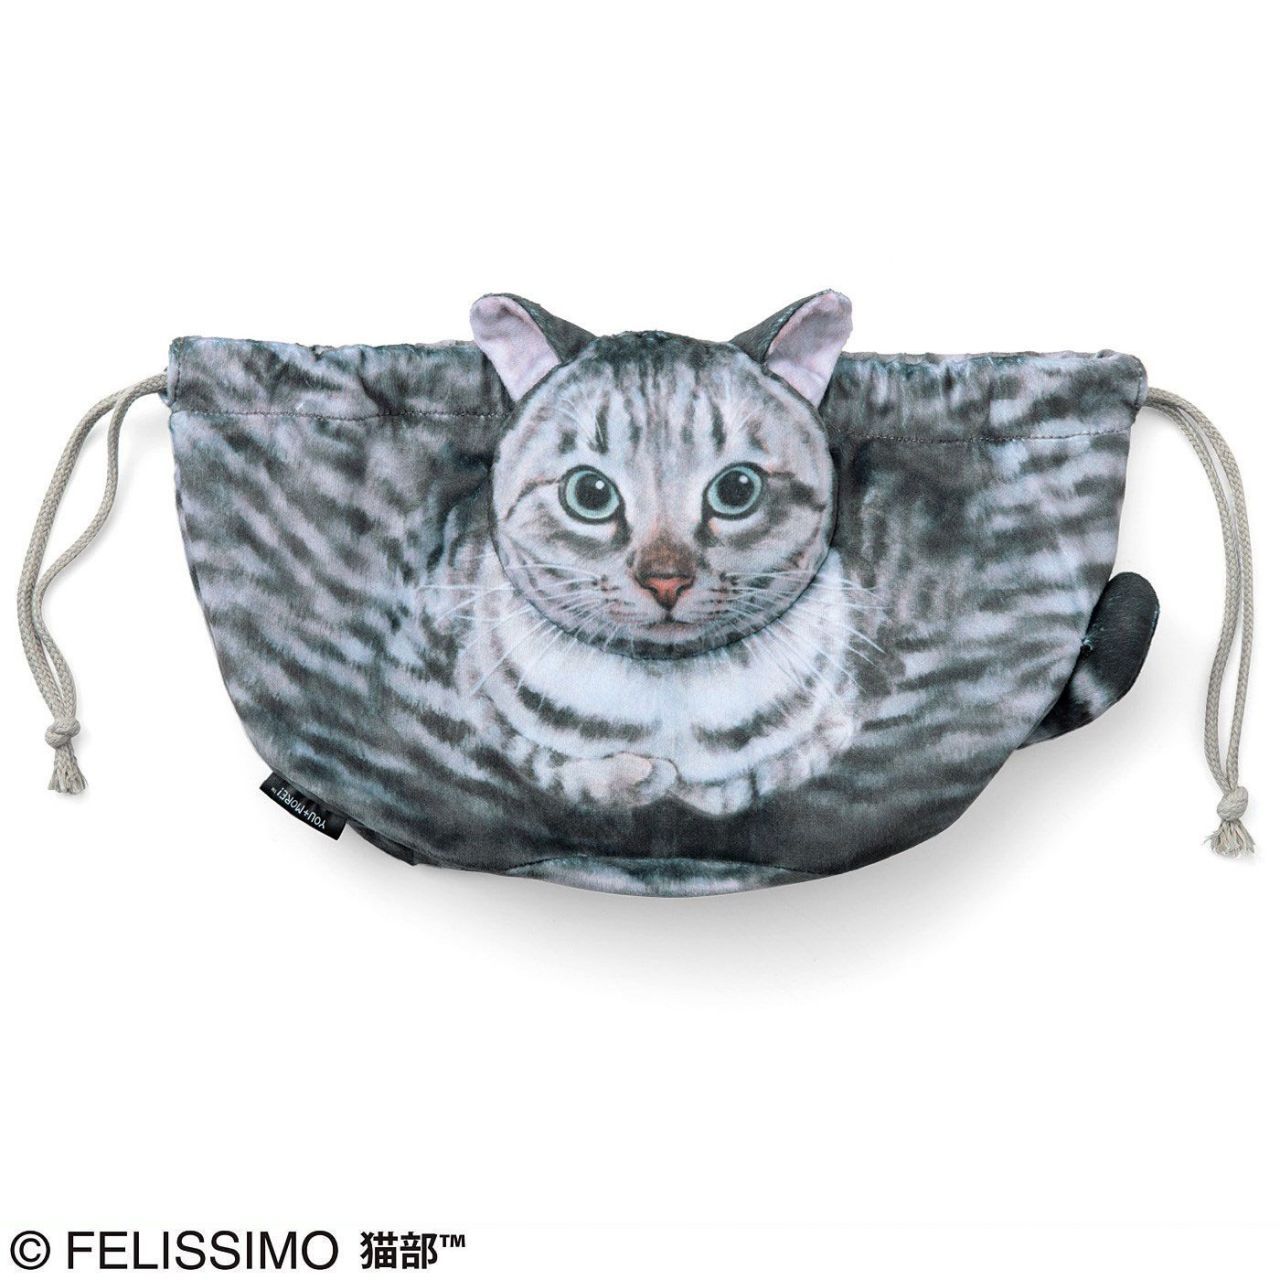 Des sacs en forme de chats ultra-réalistes #3